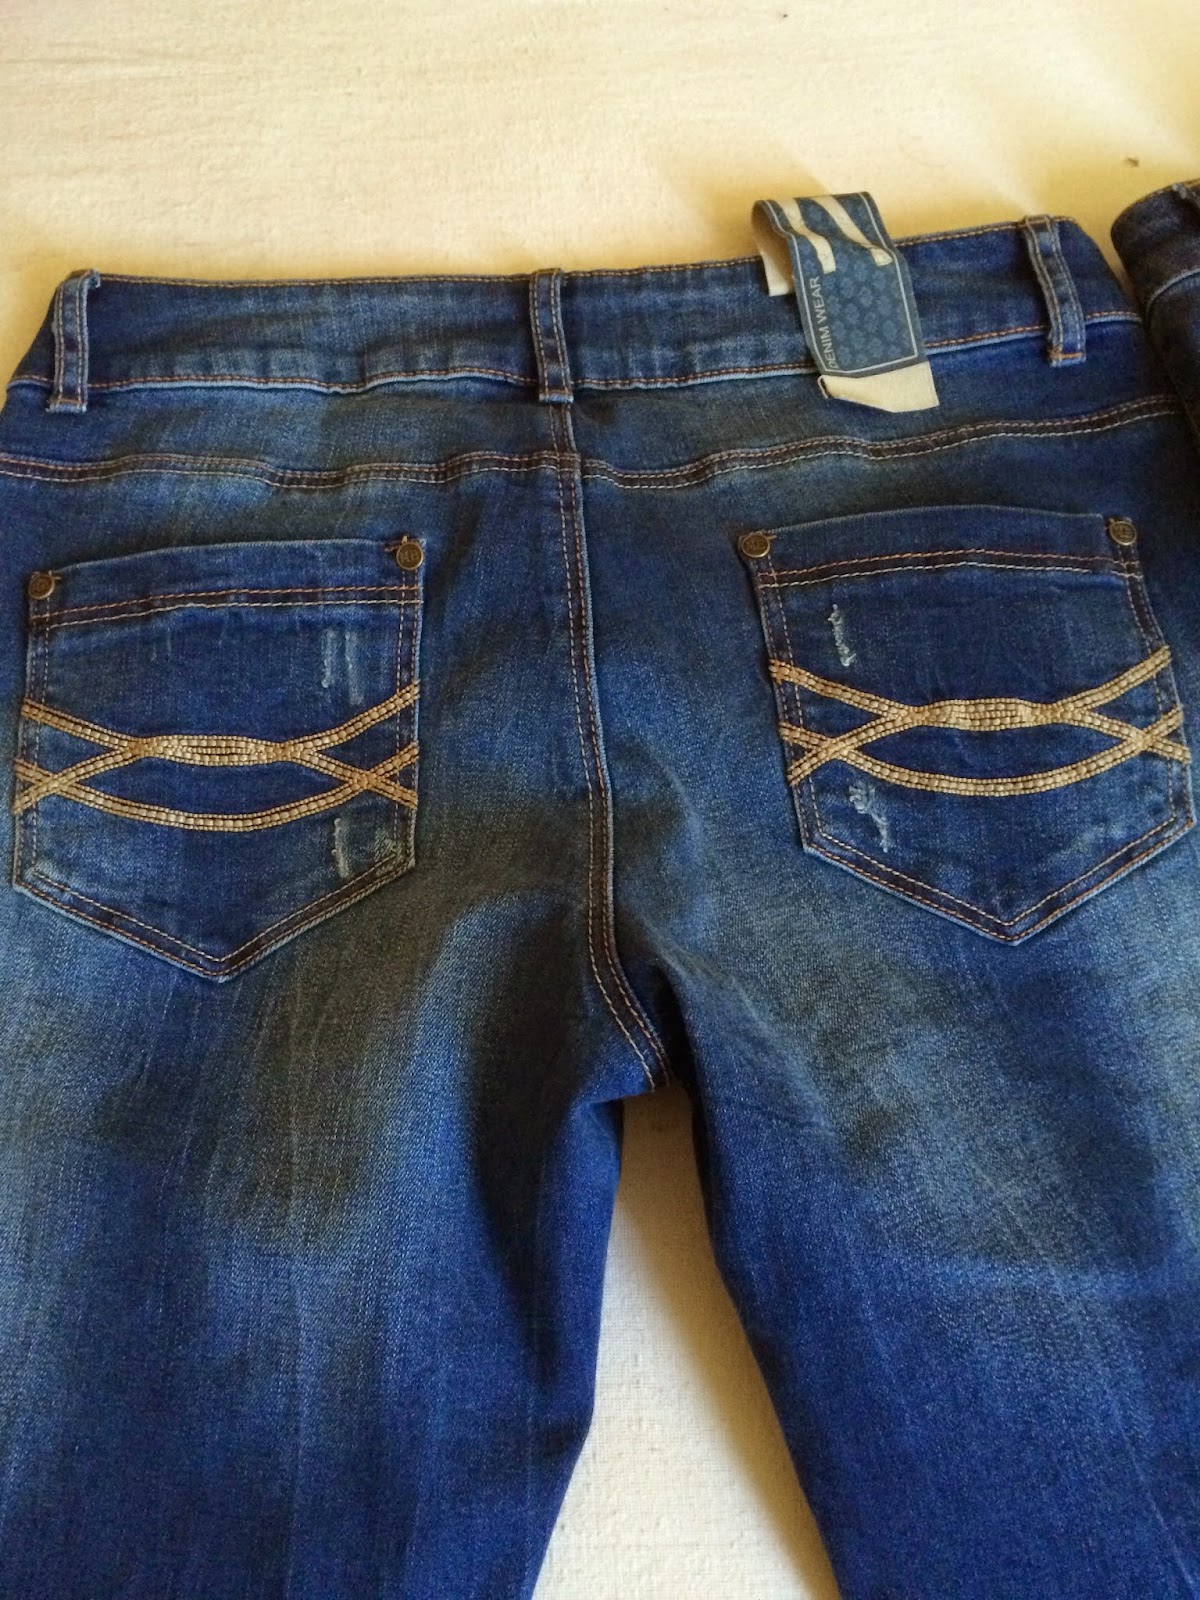 *Werbung* Shoptest Jeans Fritz 15